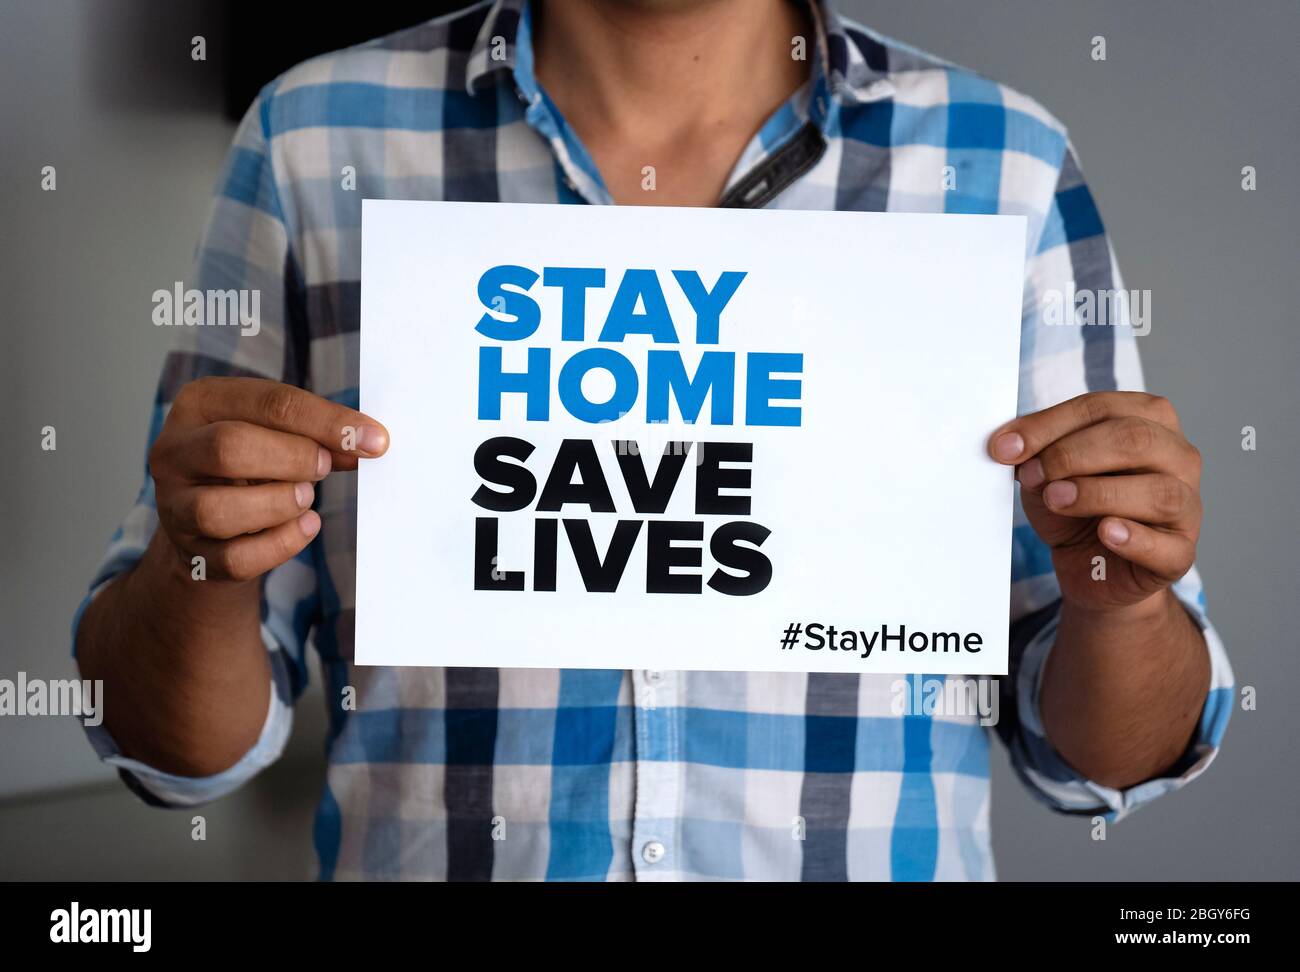 Mann mit dem Zeichen 'Stay Home Save Lives' globale Botschaft inmitten der Coronavirus-Krise. Quarantäne-Nachricht auf der ganzen Welt zur Bekämpfung der COVID-19-Pandemie. Stockfoto